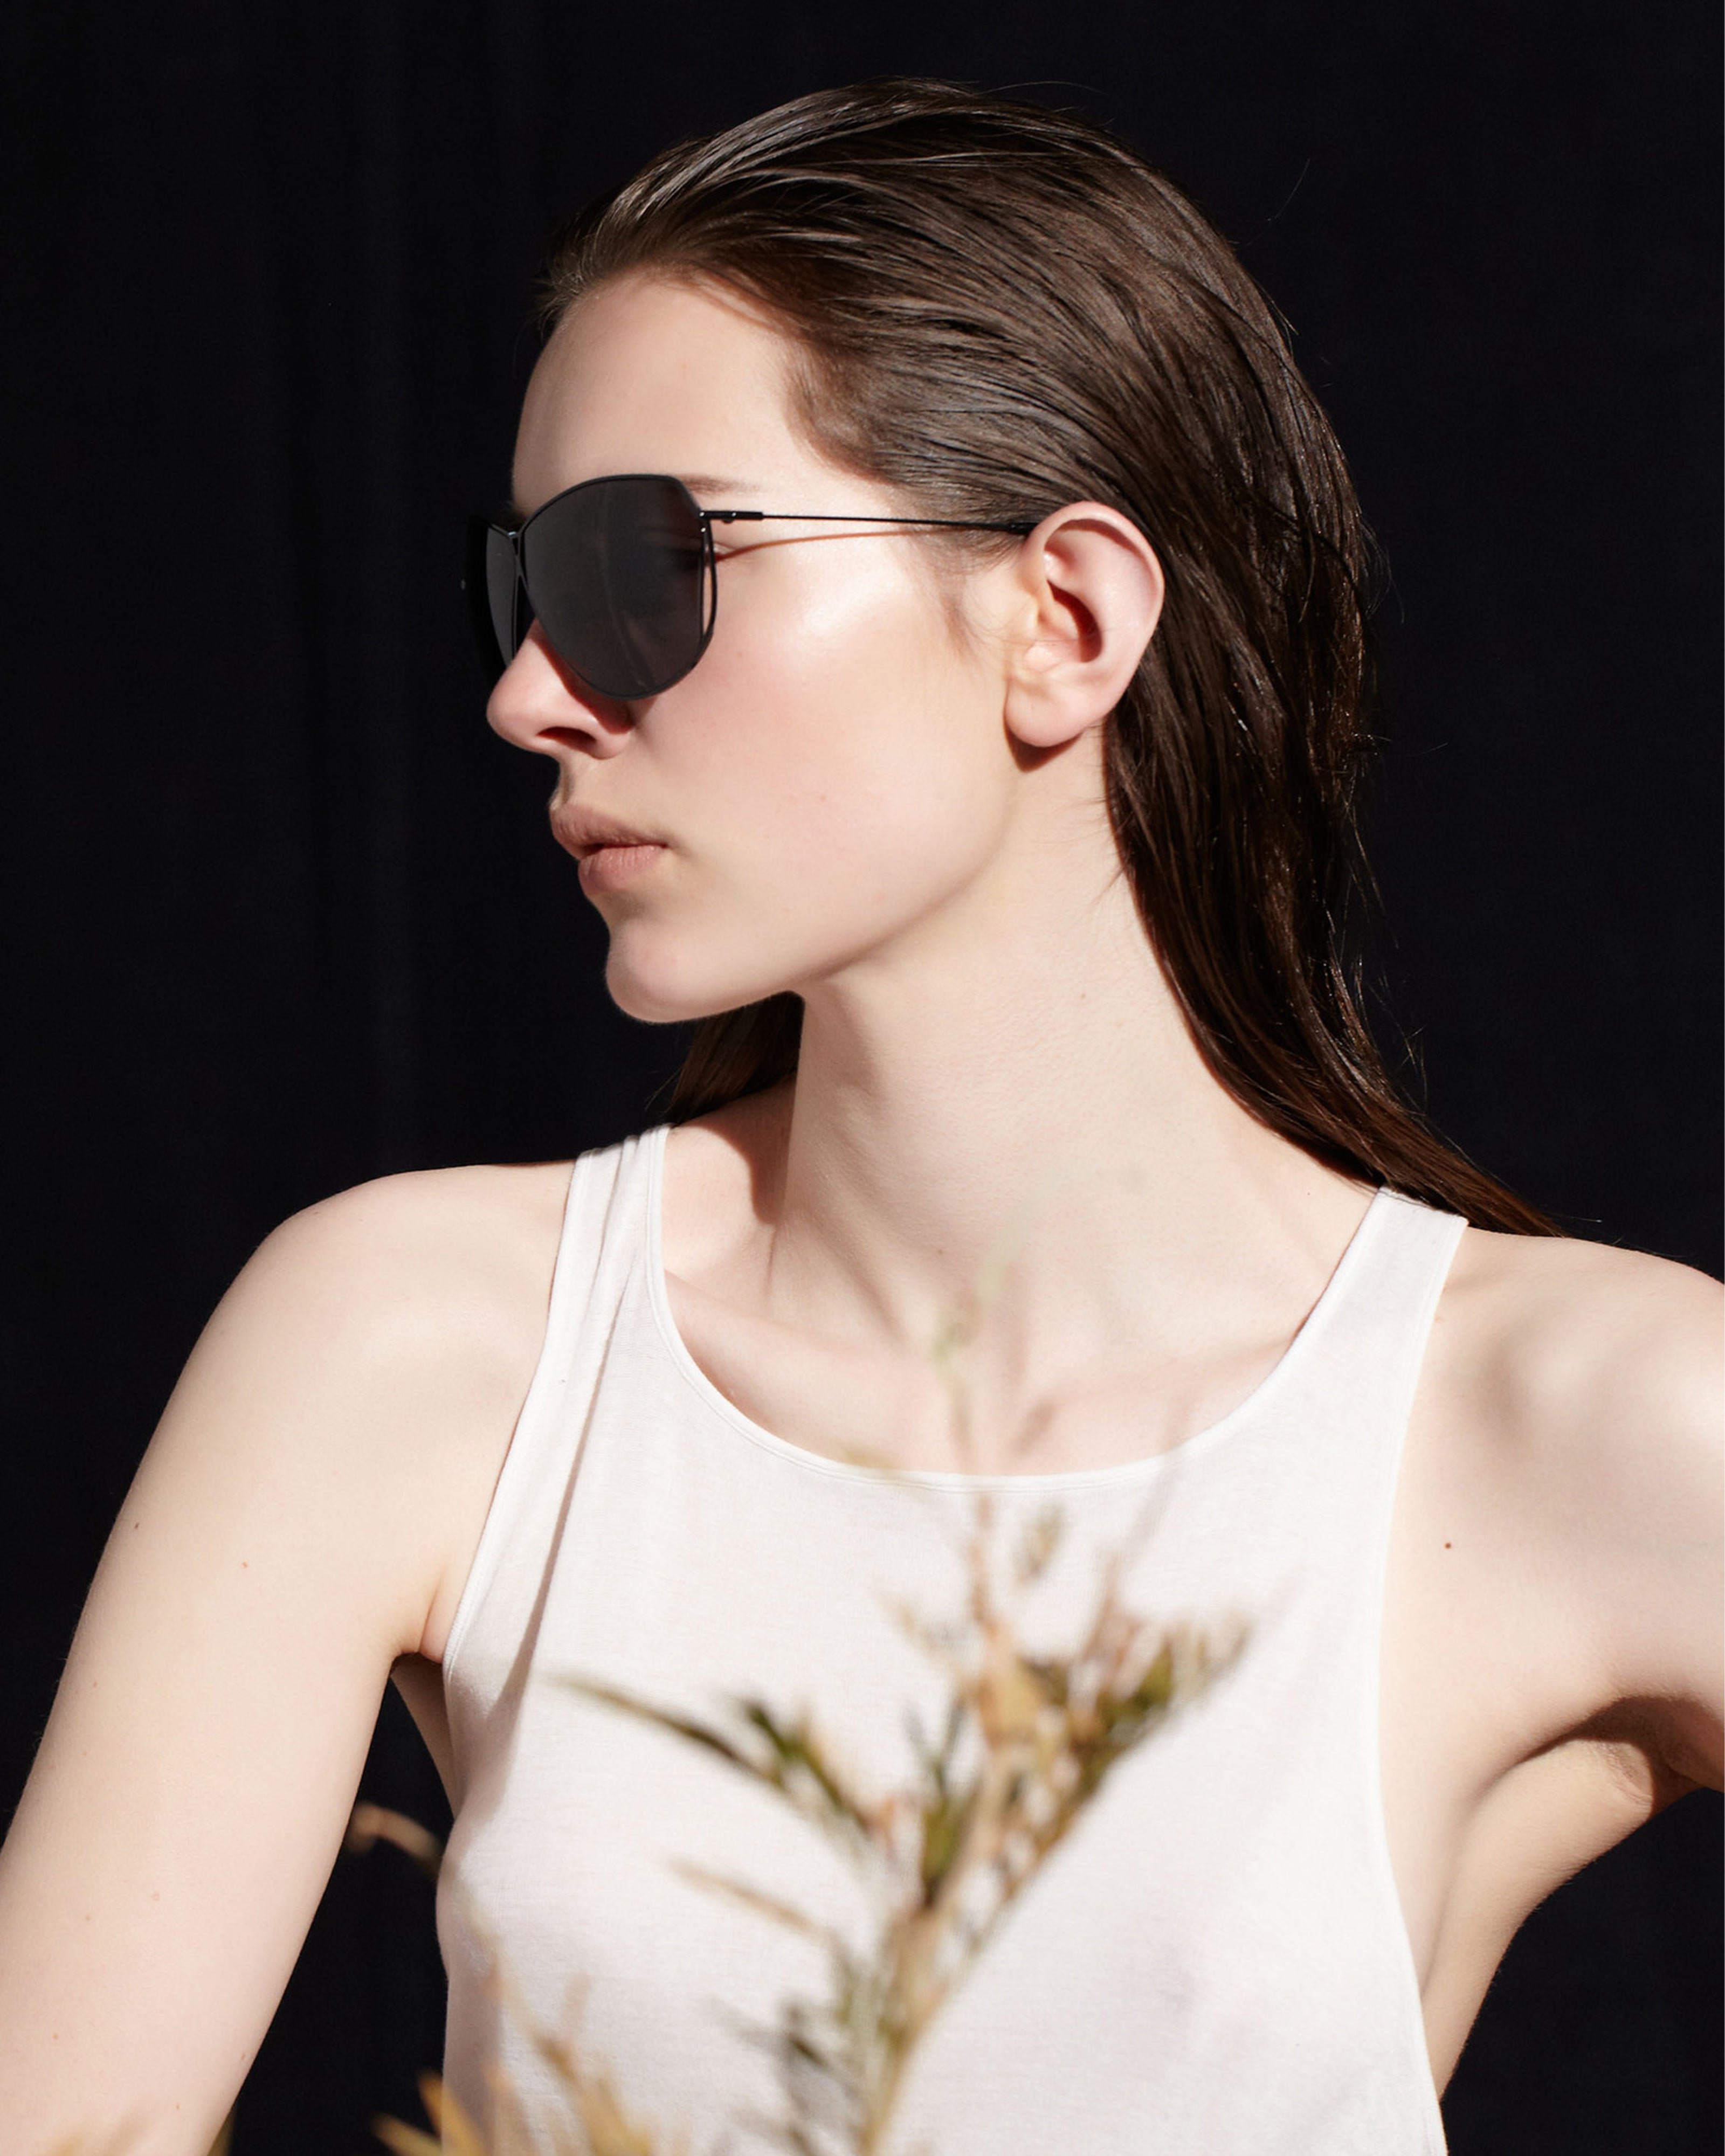 sener-besim-s2-nero-graphite-sunglasses-luxury-eyewear